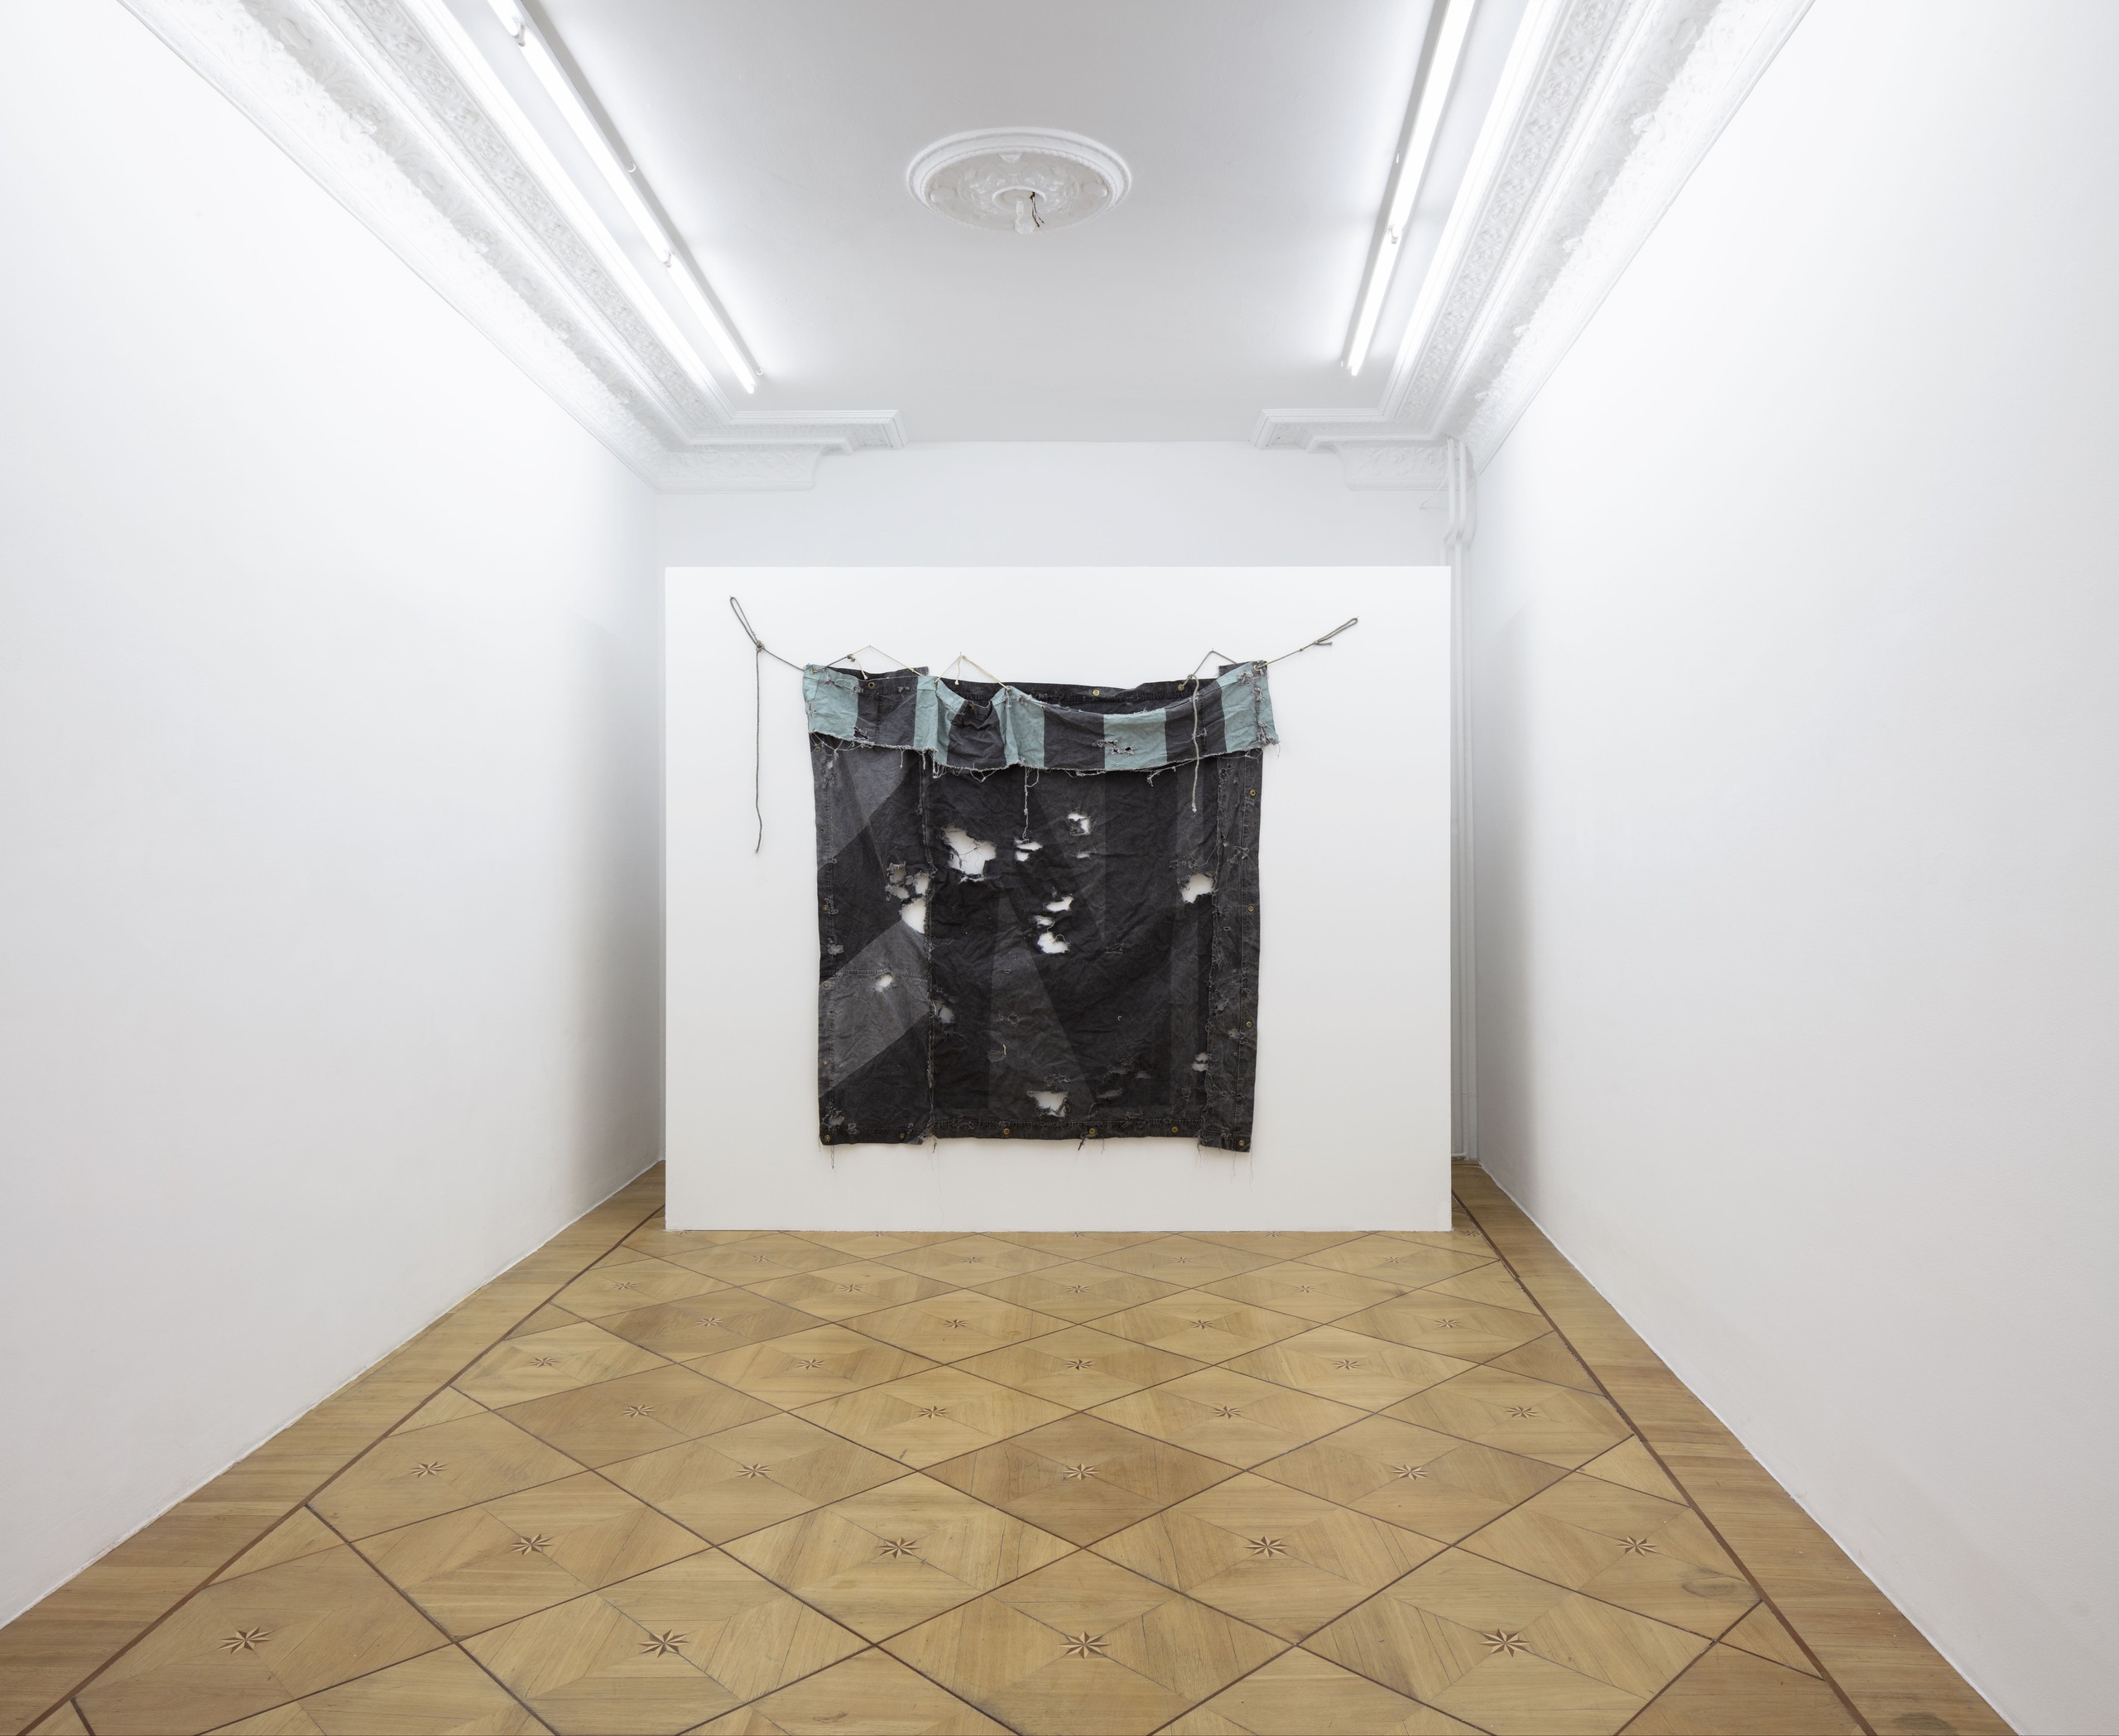 Installation view, Holt Quentel, Société, Berlin, 2019